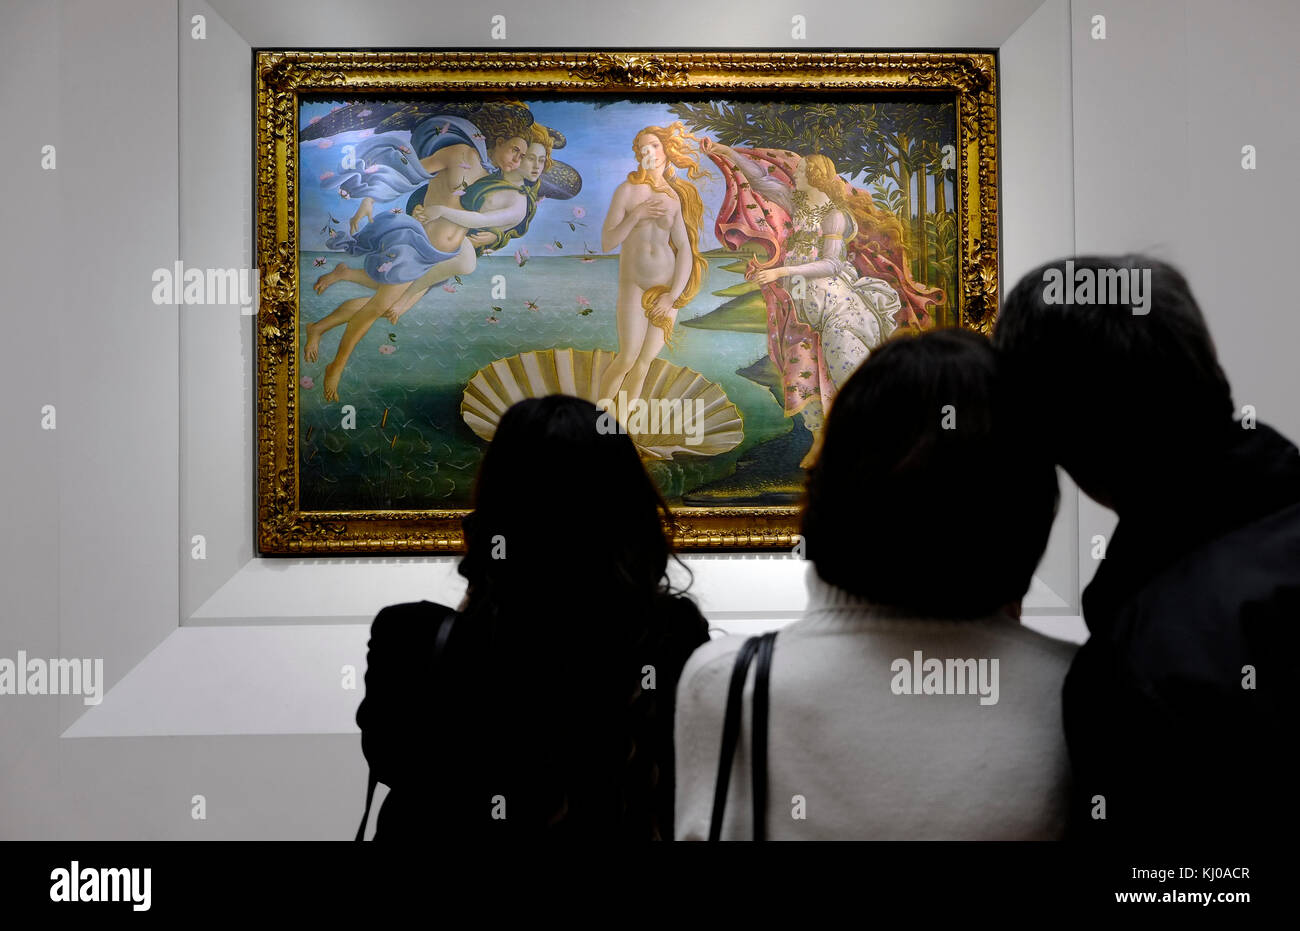 La naissance de Vénus par Sandro Botticelli dans la galerie des Offices, Florence, Italie Banque D'Images